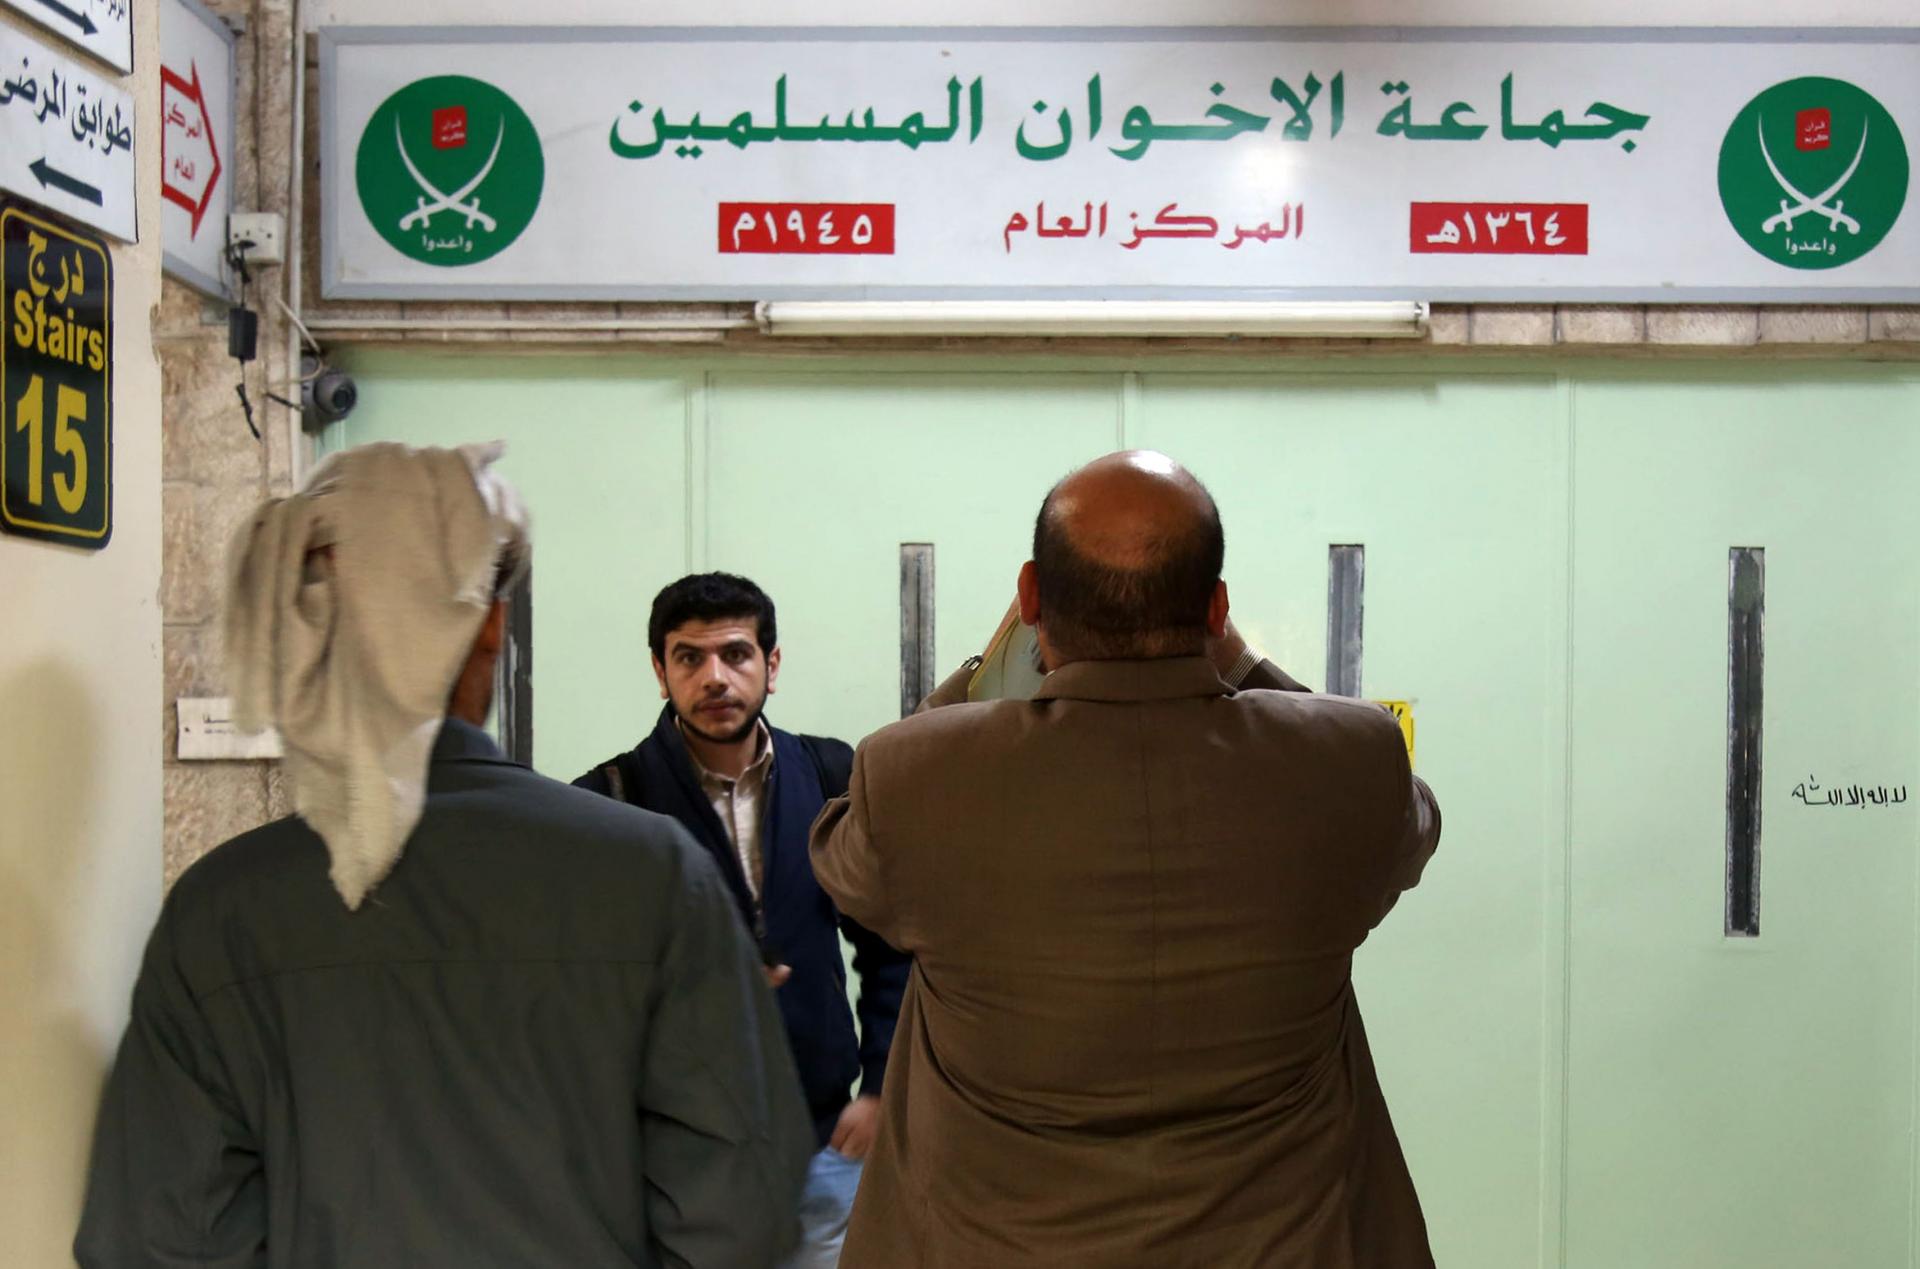 أعلى محكمة في الأردن قضت بحل جماعة الإخوان